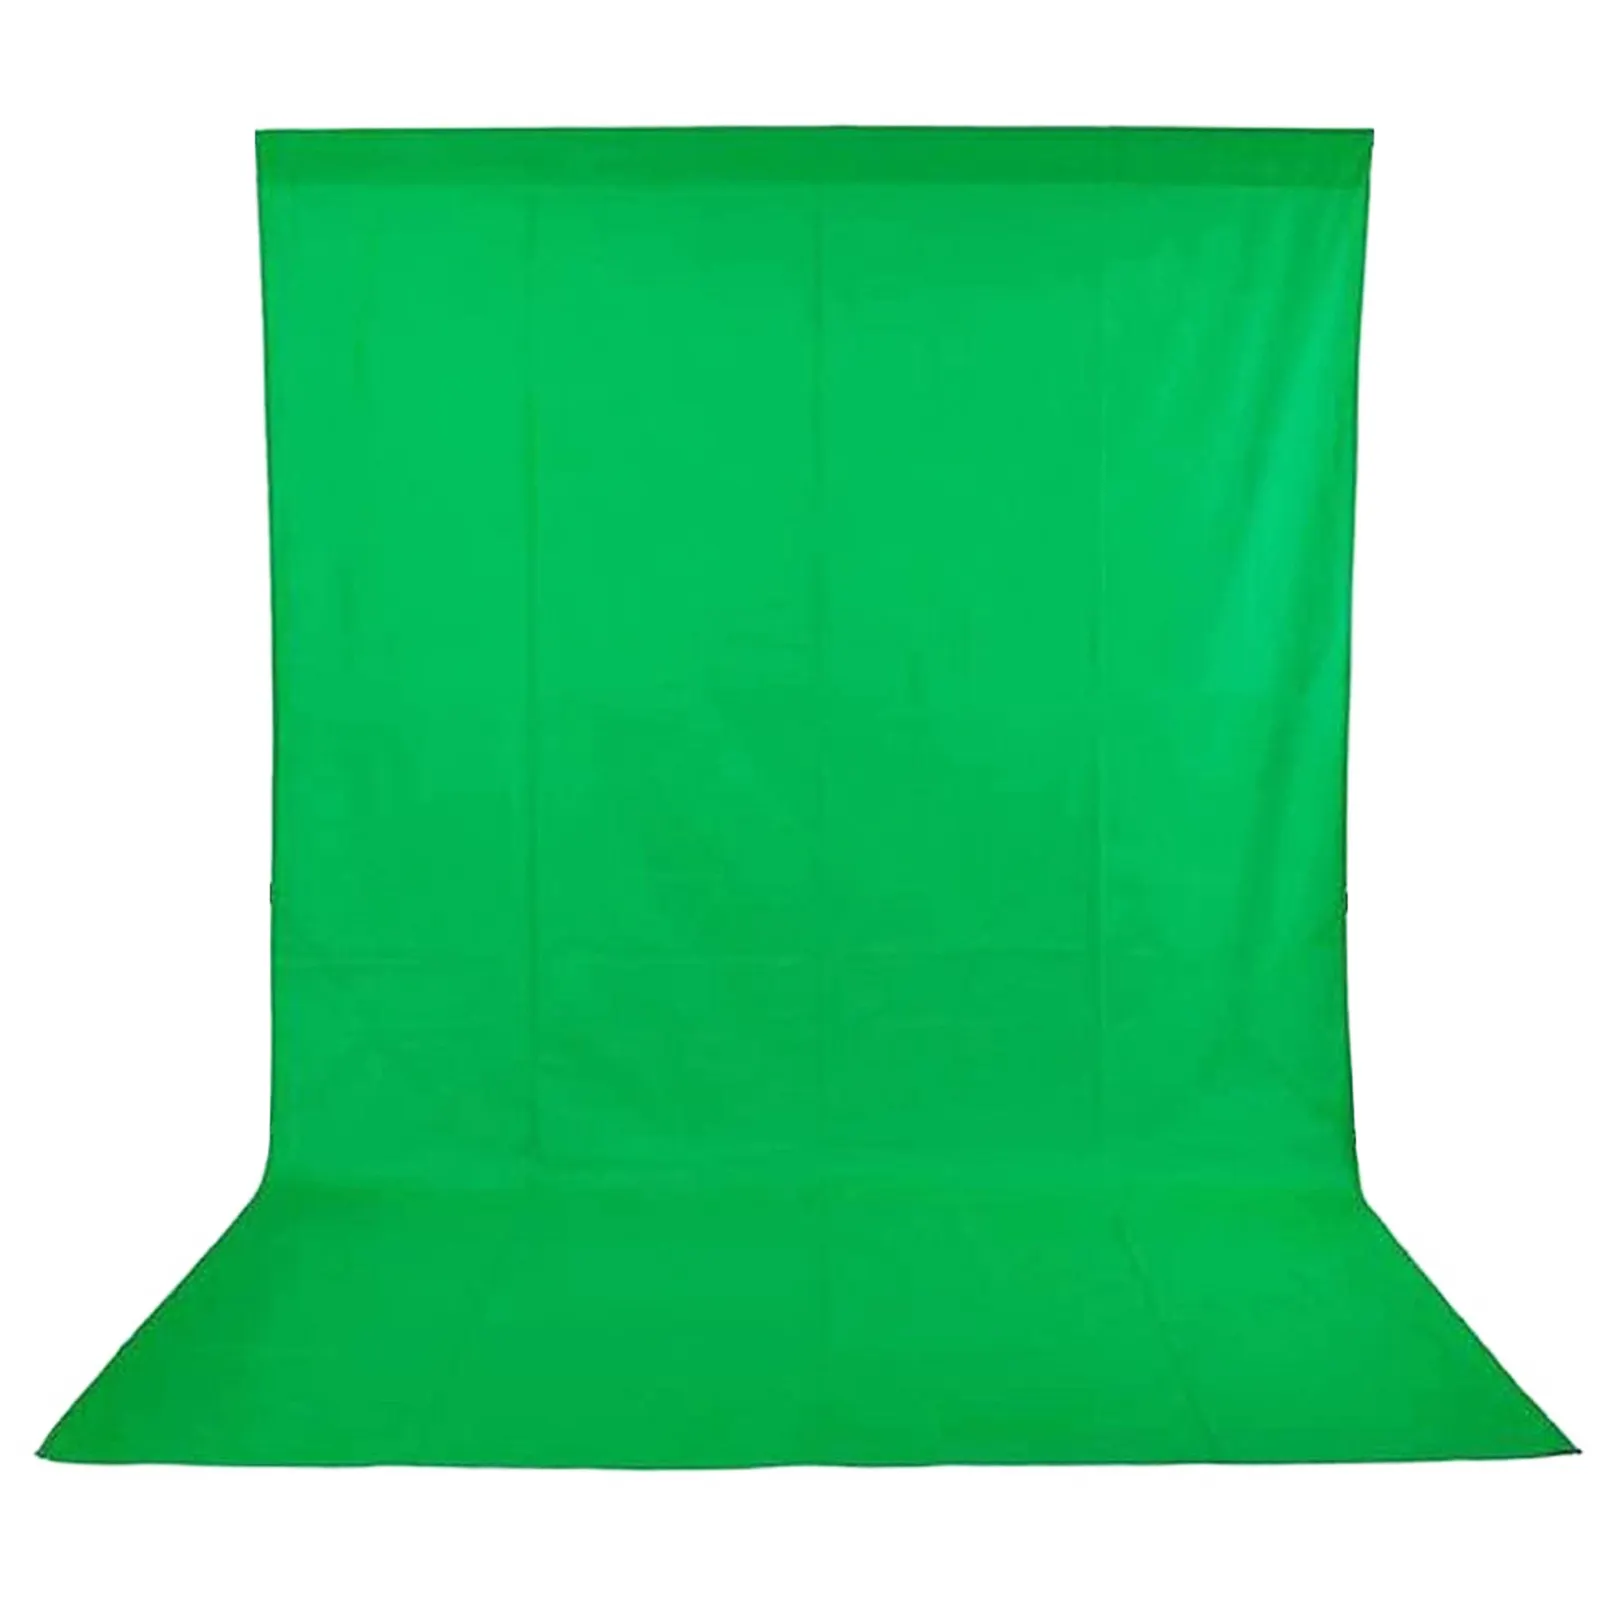 ผ้าฉากพื้นหลังสำหรับถ่ายภาพสตูดิโอ,ผ้านอนวูฟเวนมี3สีให้เลือกสีดำสีขาวสีเขียวขนาด1.6X3ม./5 X 10FT